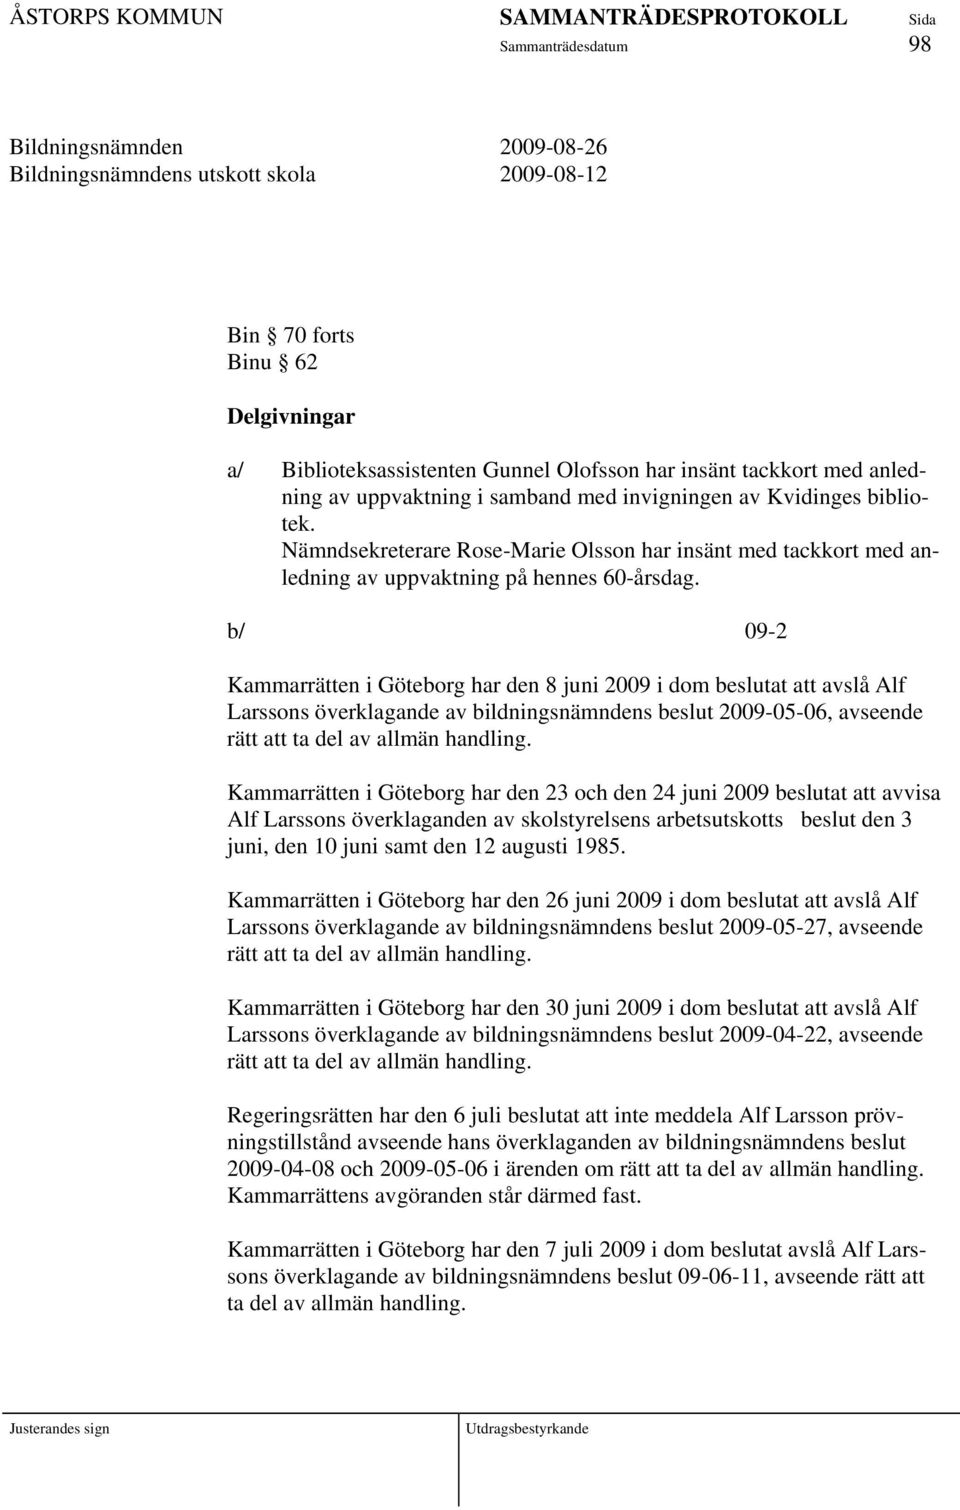 b/ 09-2 Kammarrätten i Göteborg har den 8 juni 2009 i dom beslutat att avslå Alf Larssons överklagande av bildningsnämndens beslut 2009-05-06, avseende rätt att ta del av allmän handling.